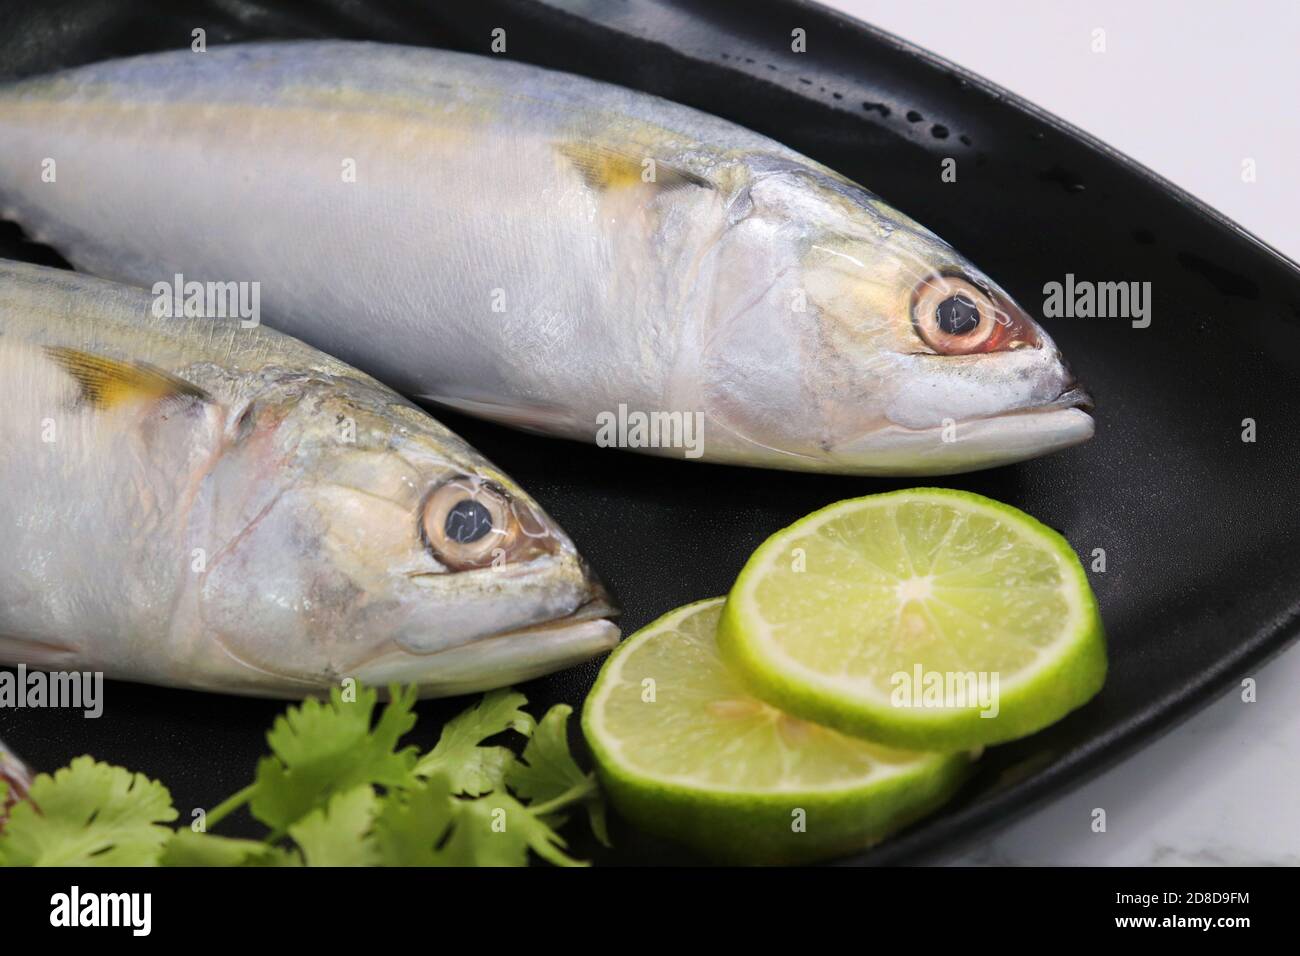 Ungekochte indische Makrelenfische Rastrelliger kanagurta. Auch bekannt als Bangda Fisch. Freier Speicherplatz für Kopien. Zitronenkeil und Koriander. Draufsicht Fischhintergrund. Stockfoto